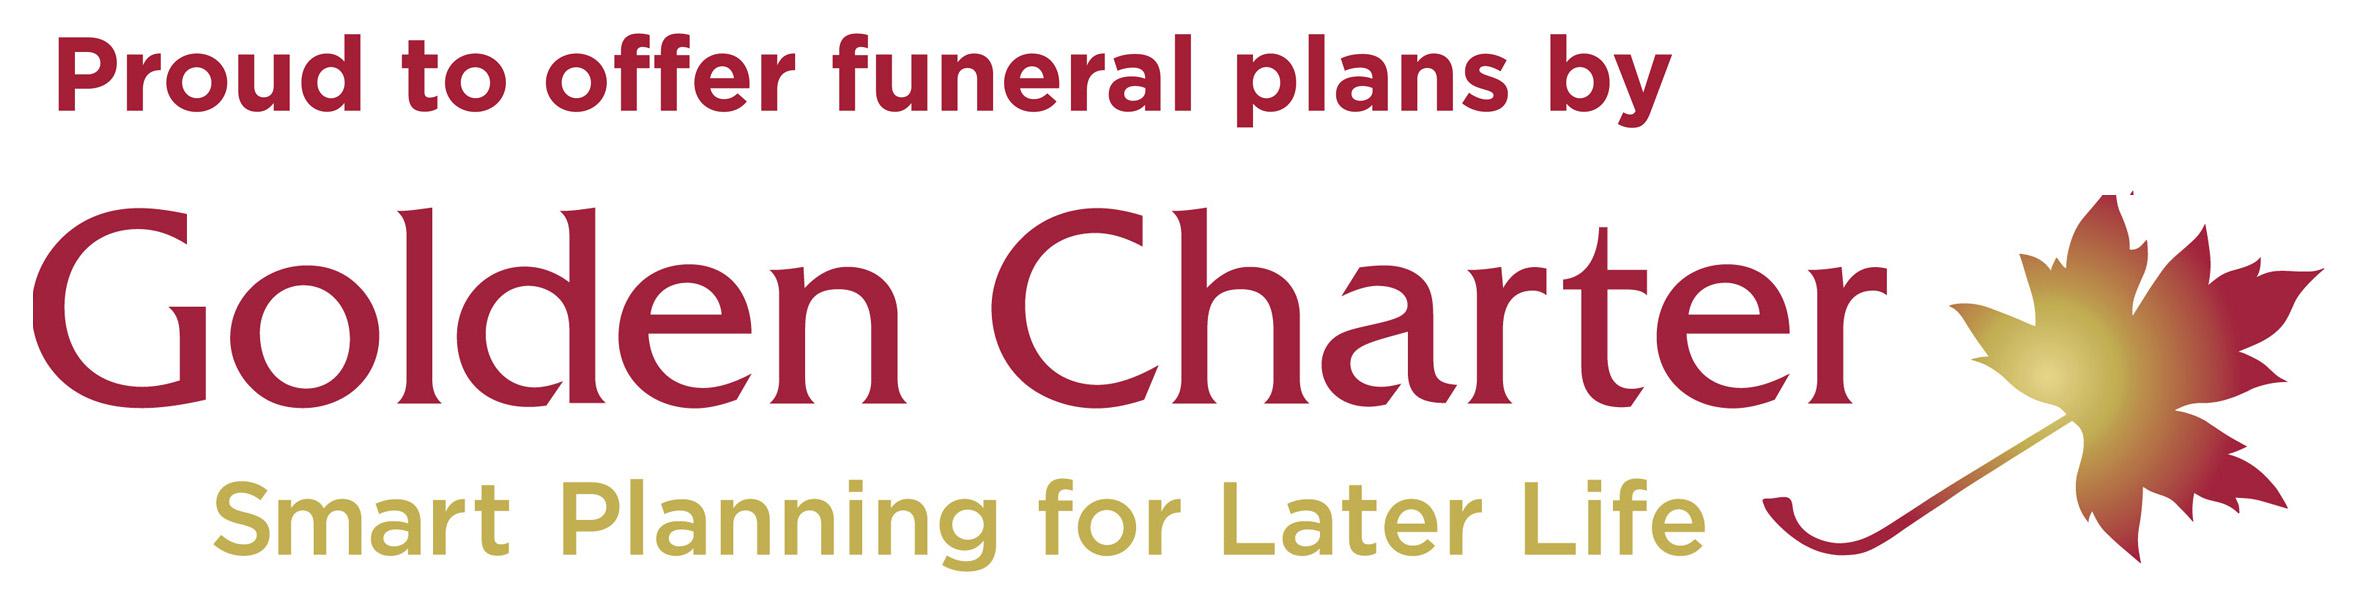 golden charter funeral plans